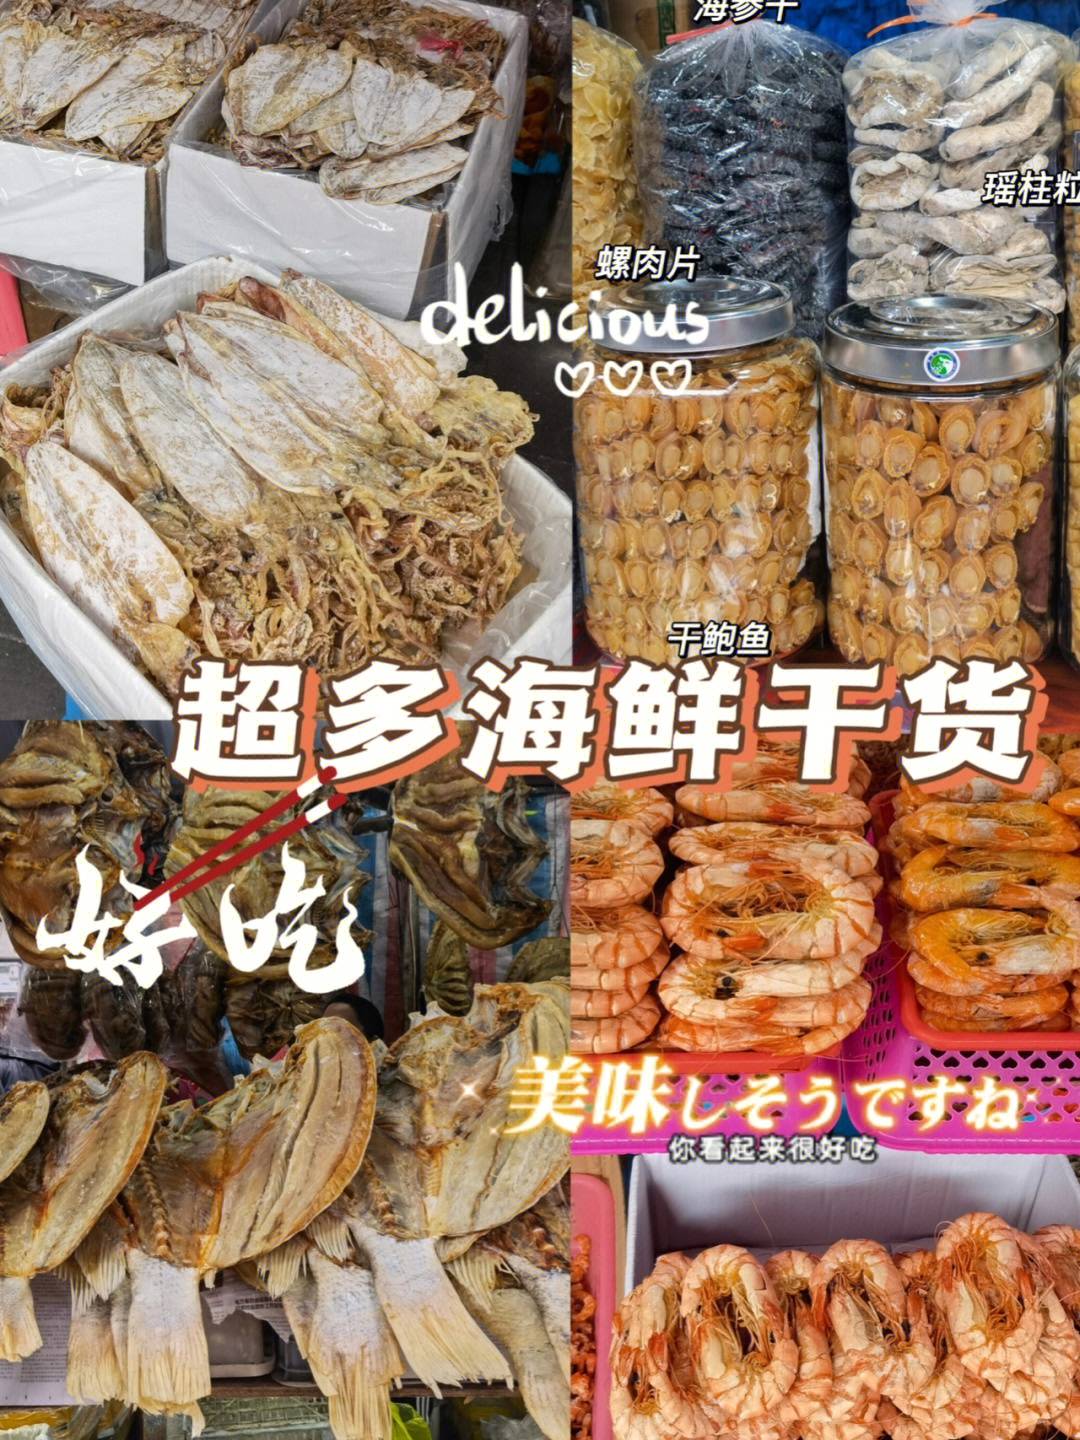 超多海鲜干货本地人也经常去买菜的东门市场